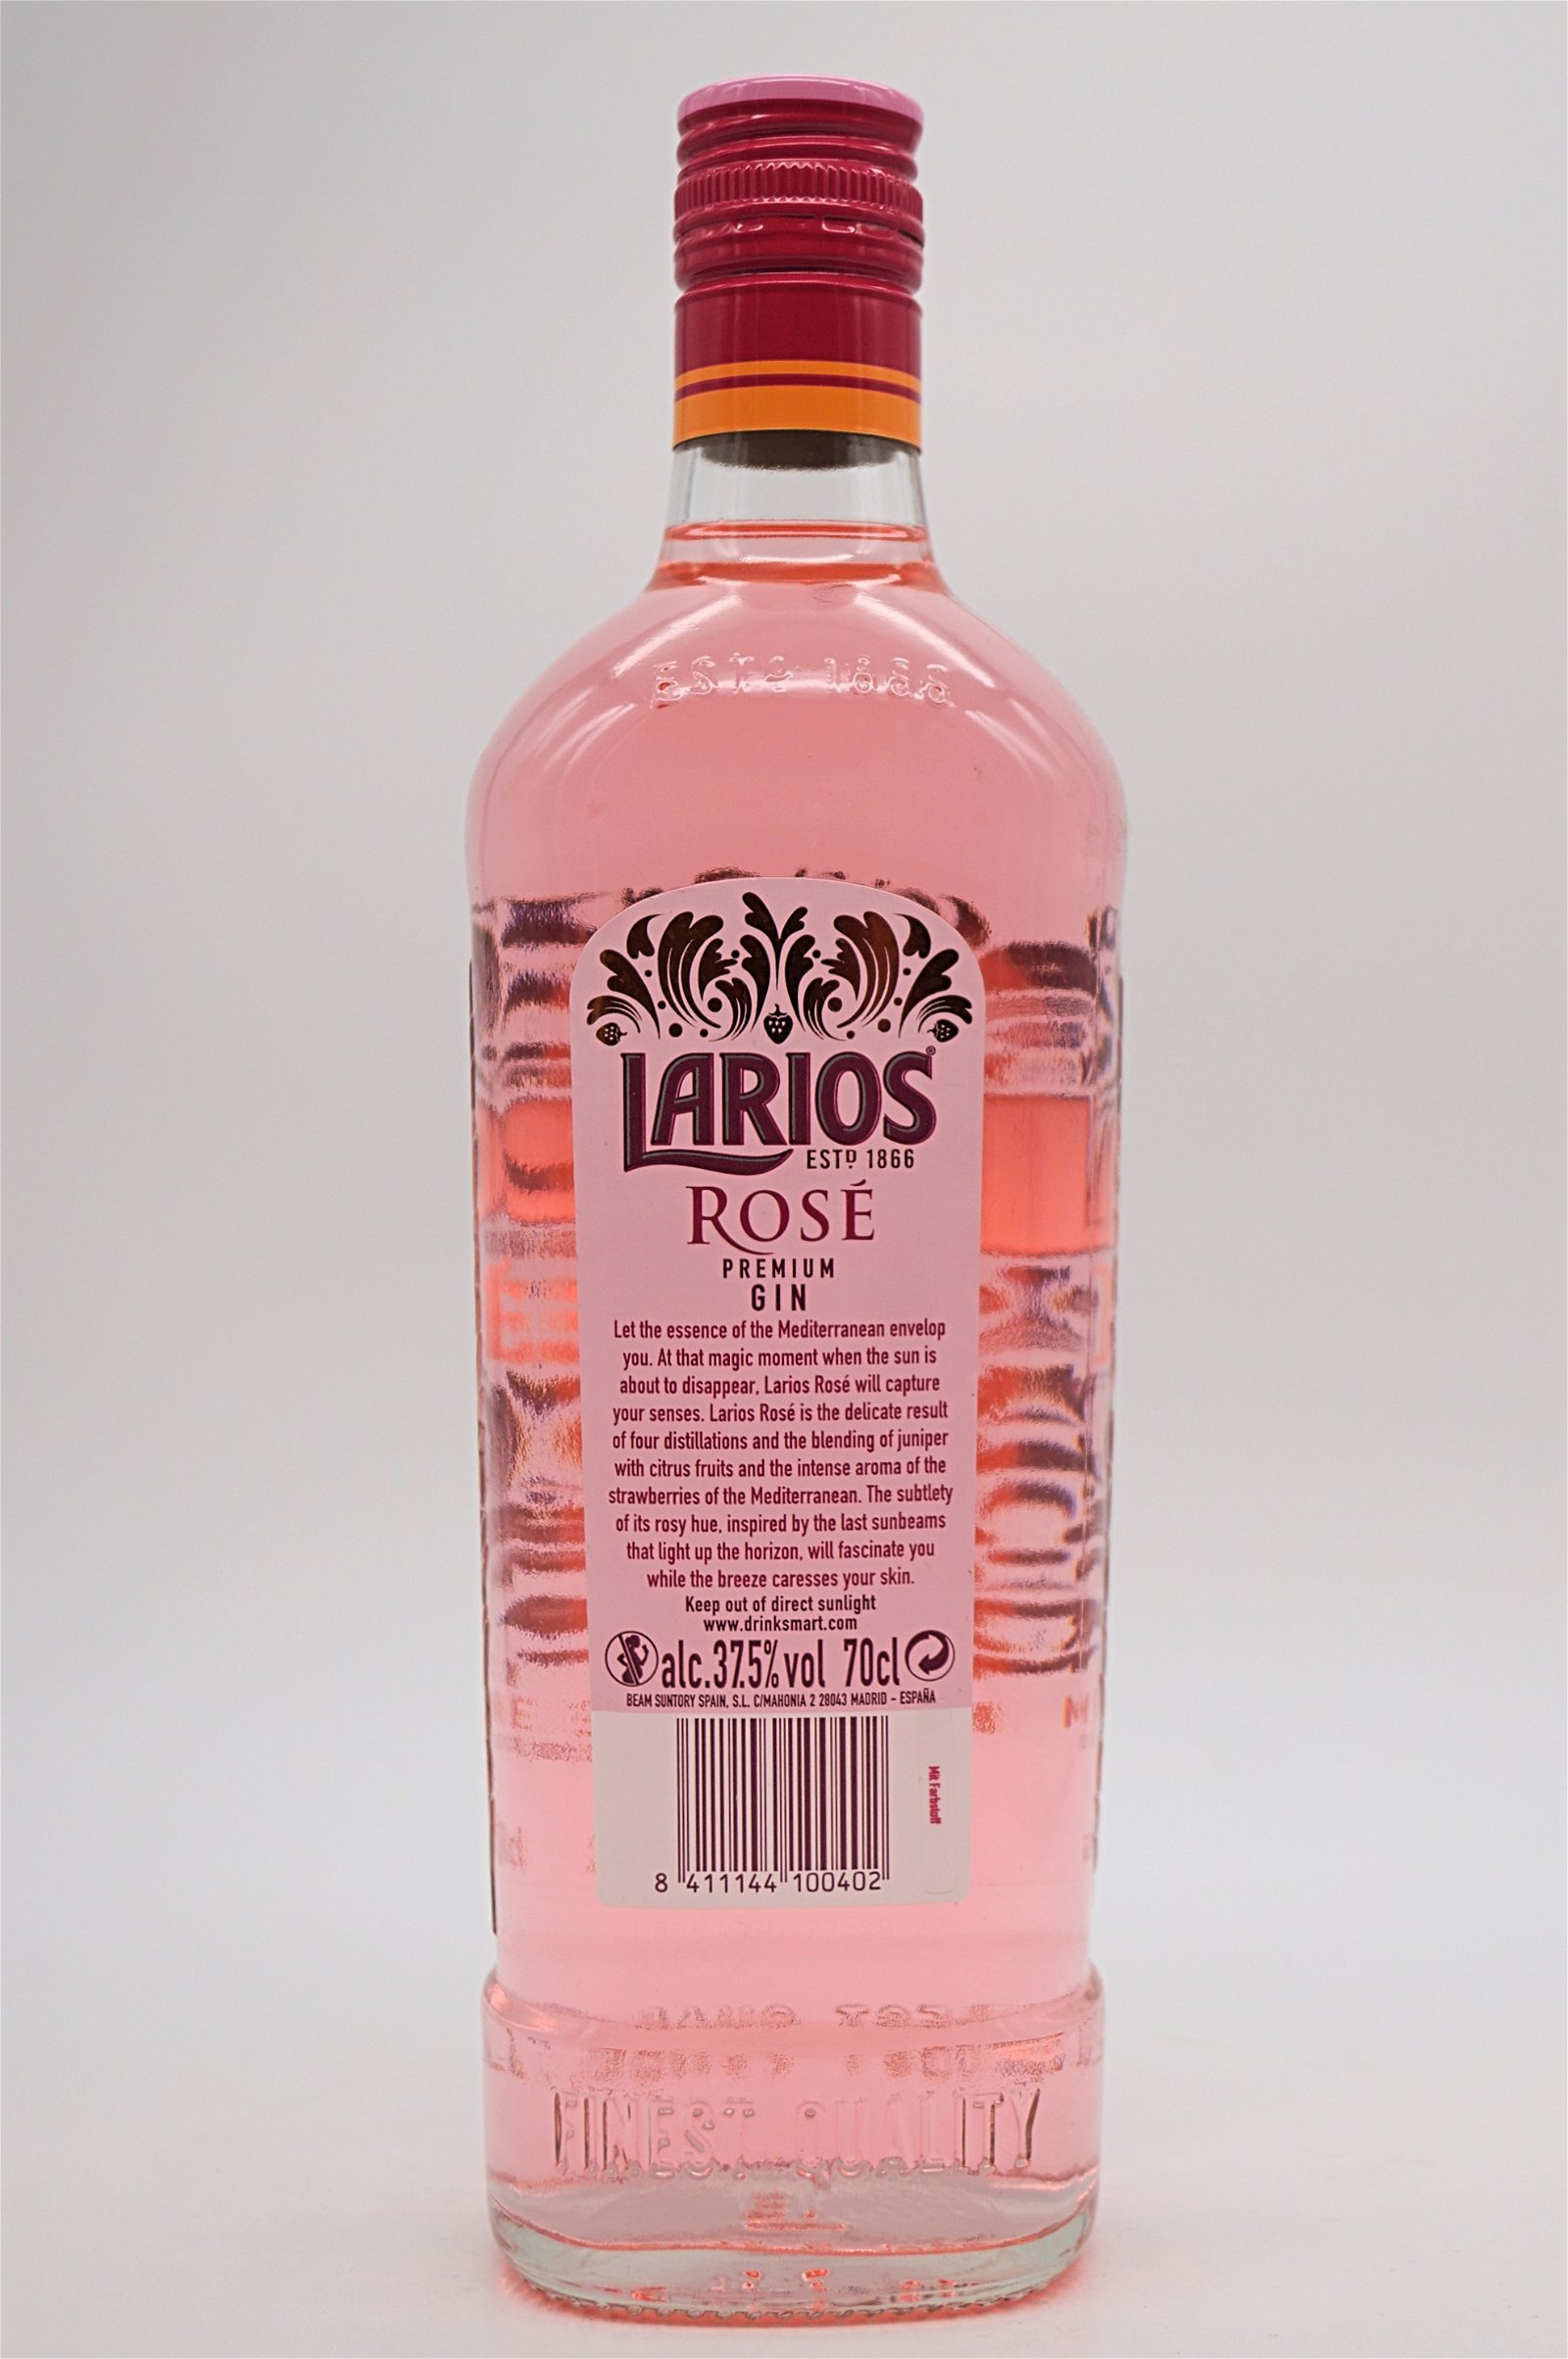 Larios Rose Premium Gin